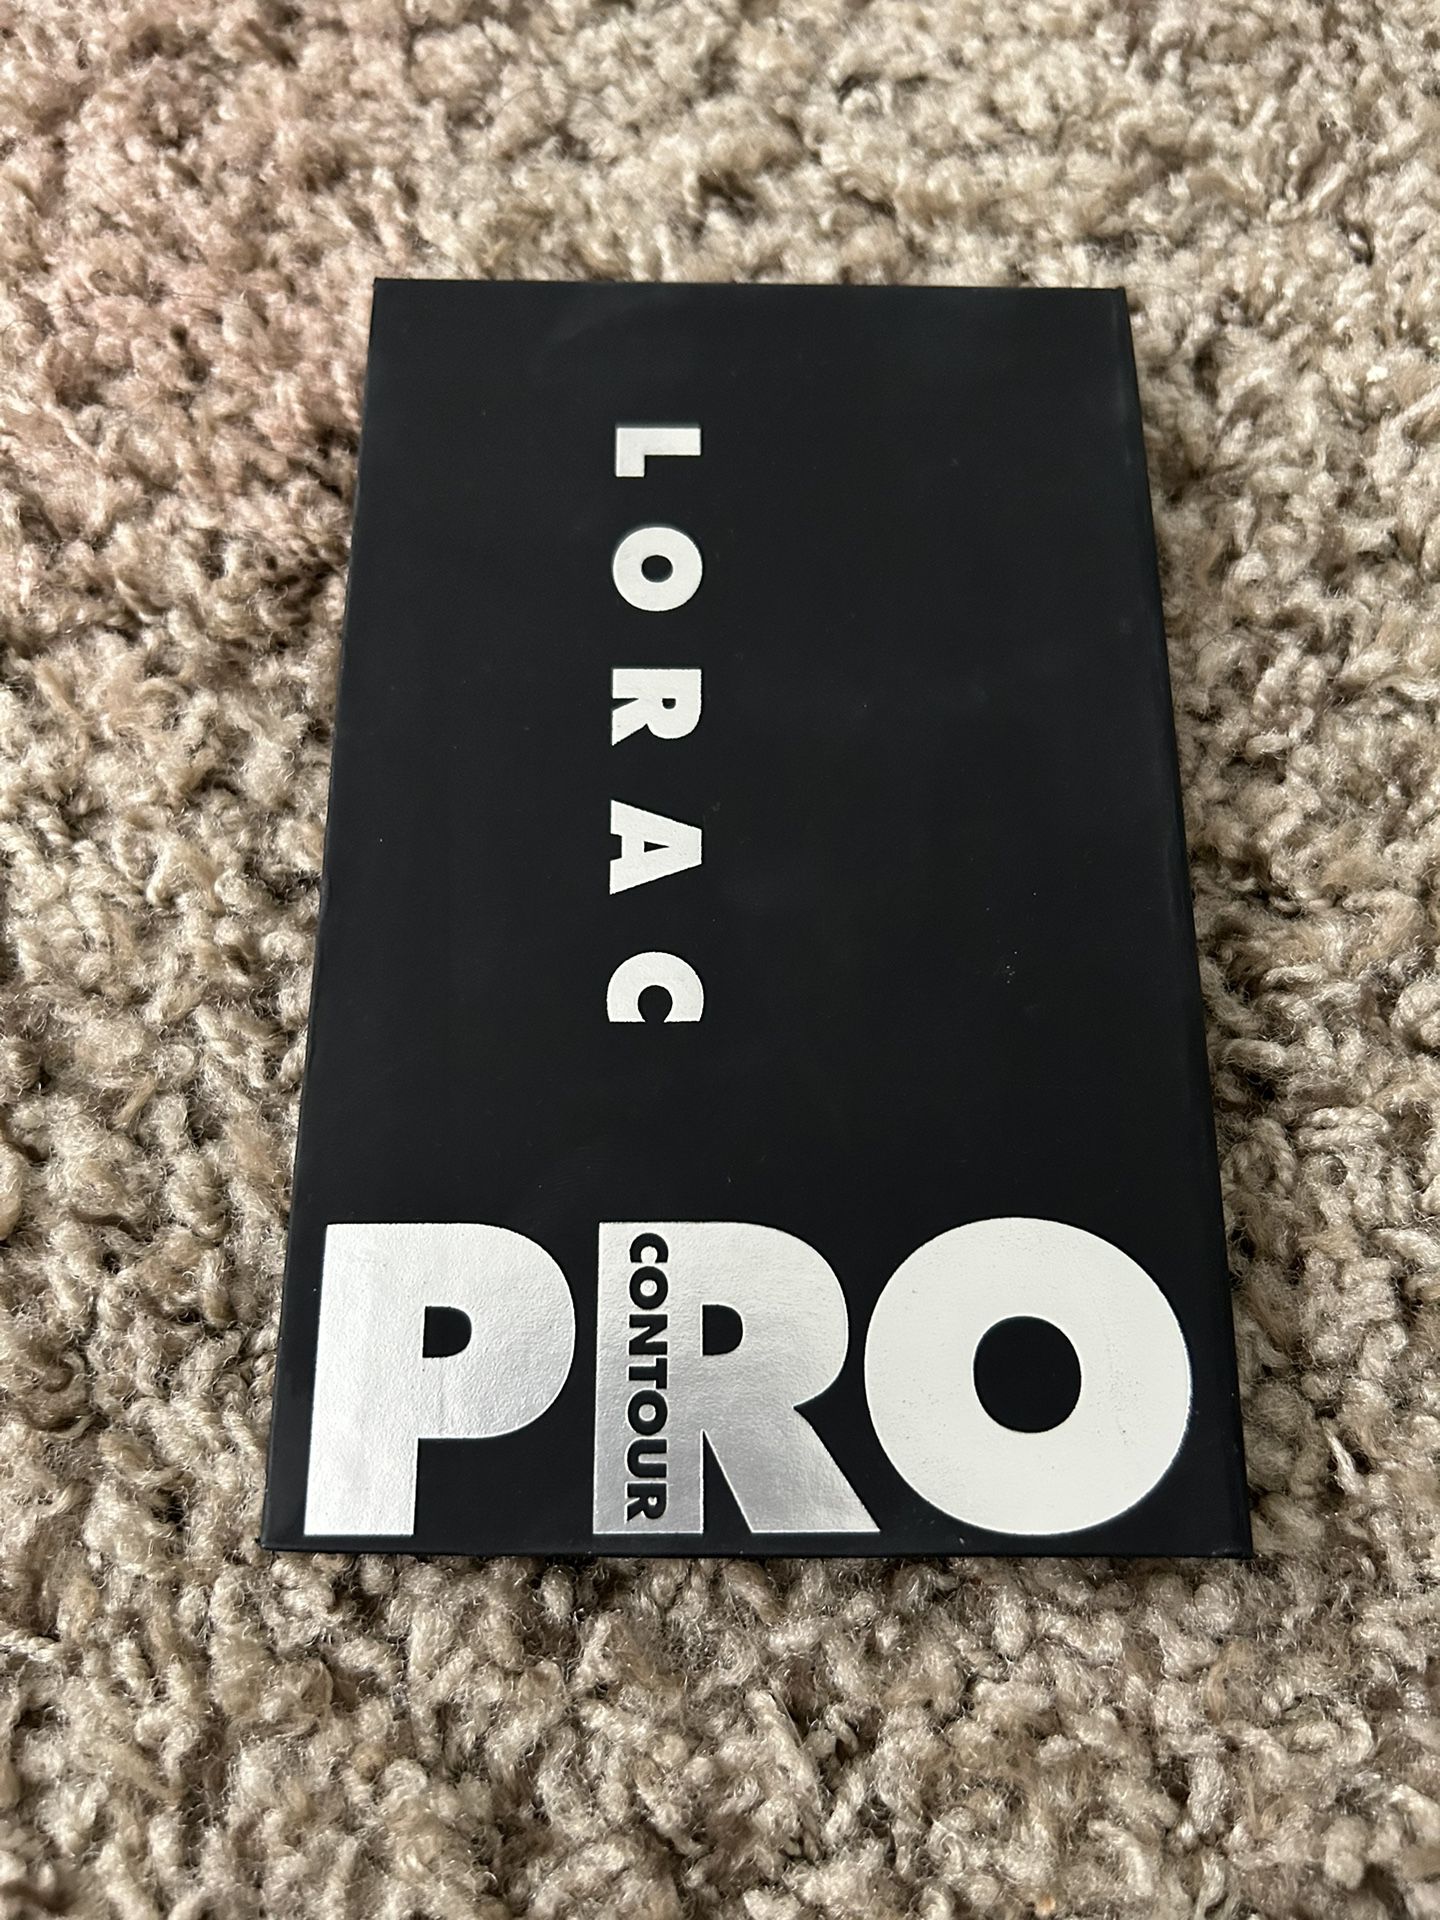 Lorac Pro Contour Palette